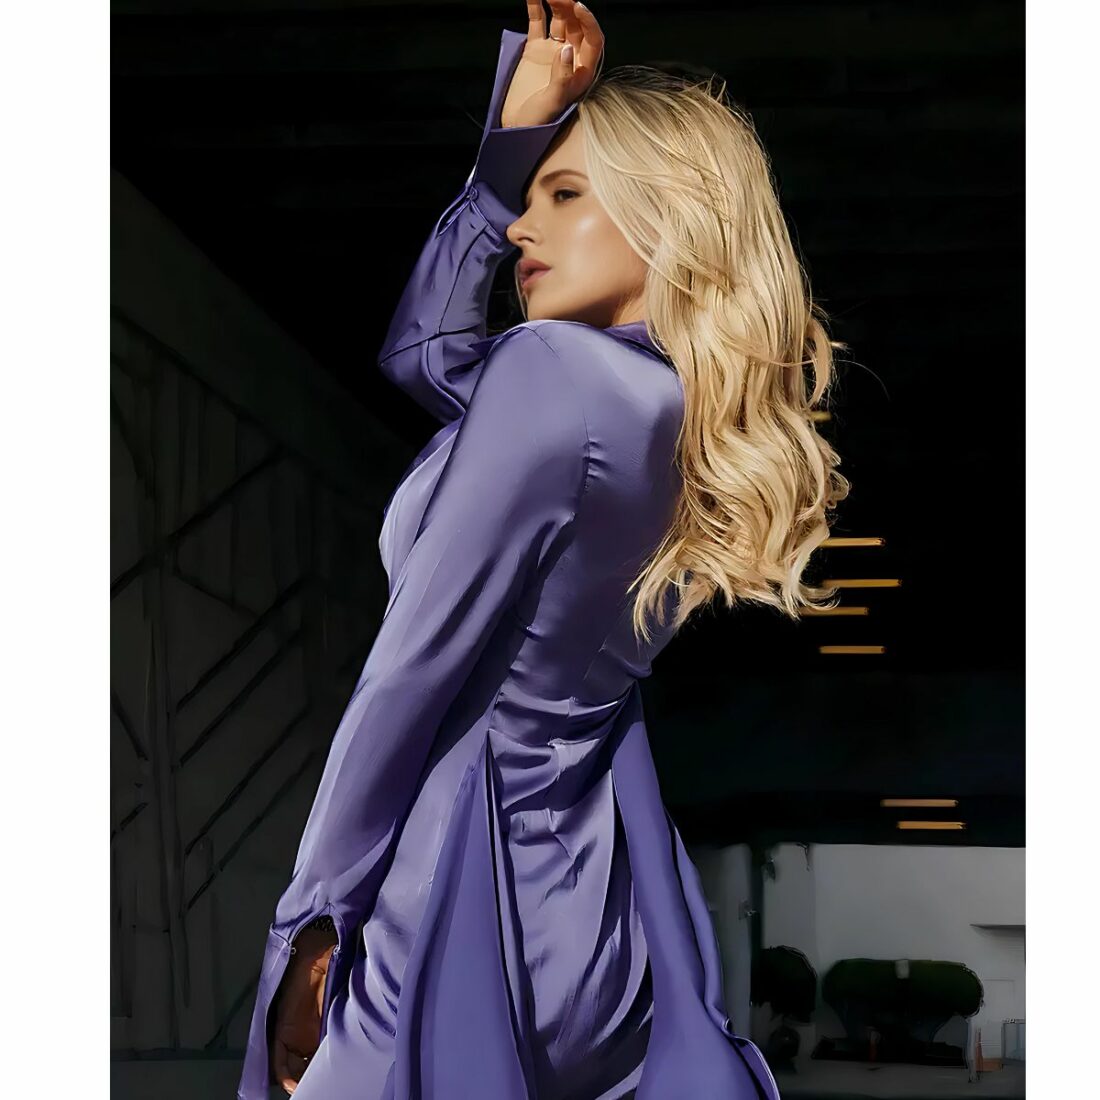 Mini robe courte en satin à manches longues violette IMG 15 02 24 minirobe courte satin jupe violette